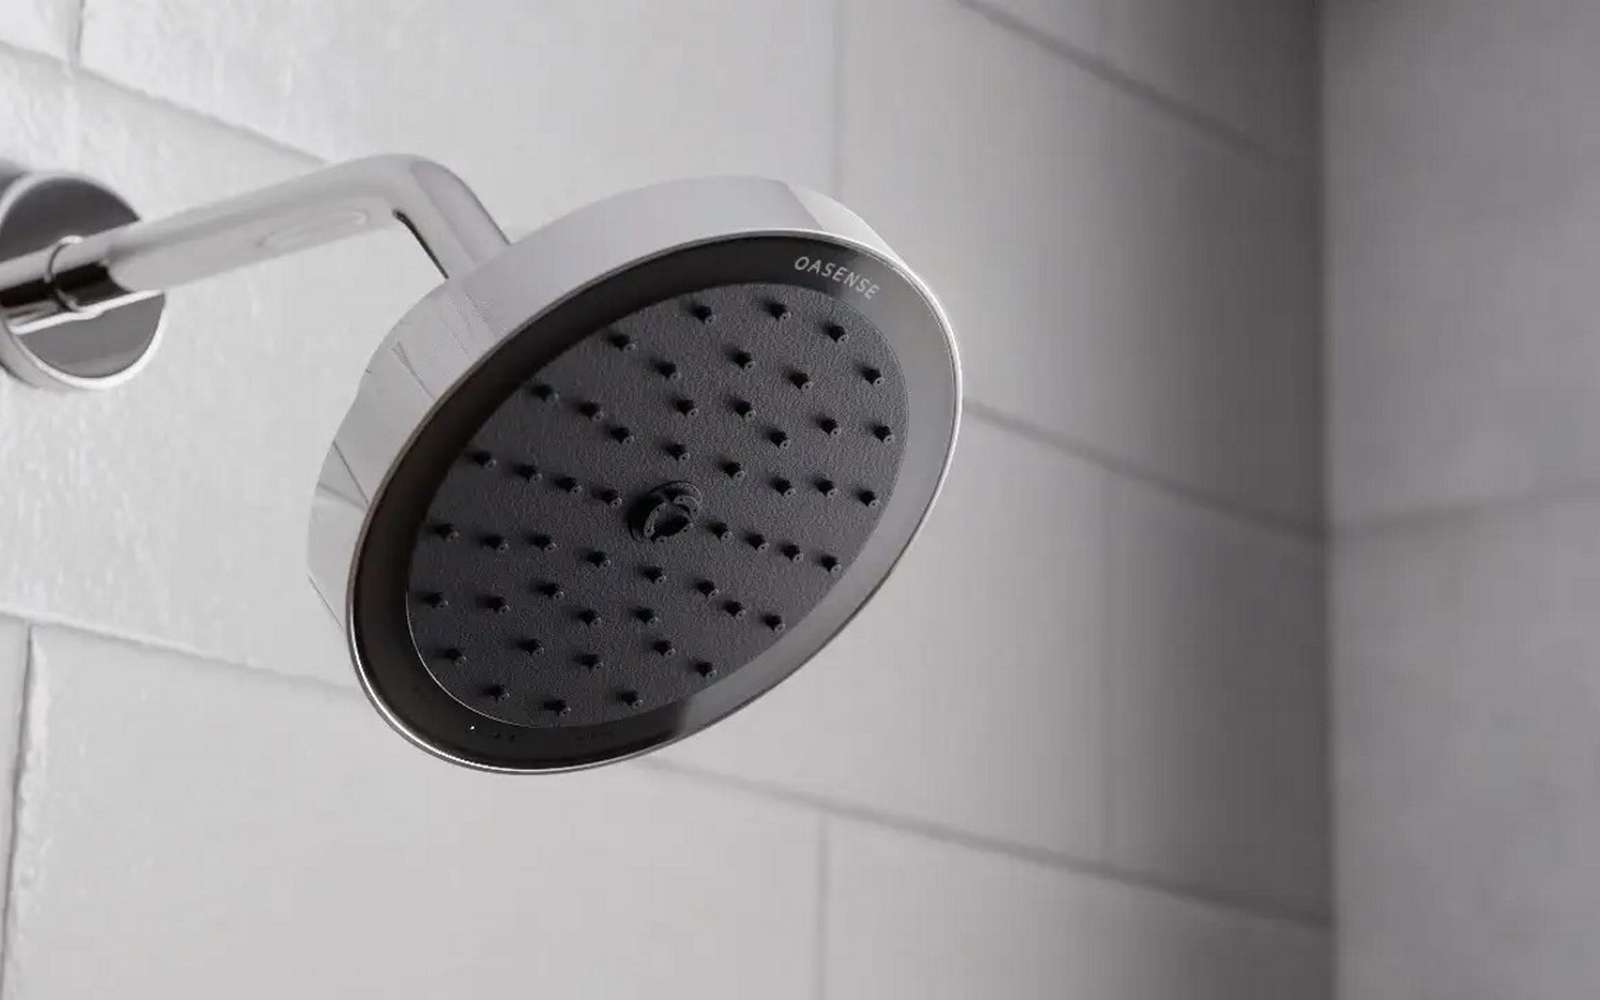 Voici la douche intelligente idéale pour faire des économies d'eau